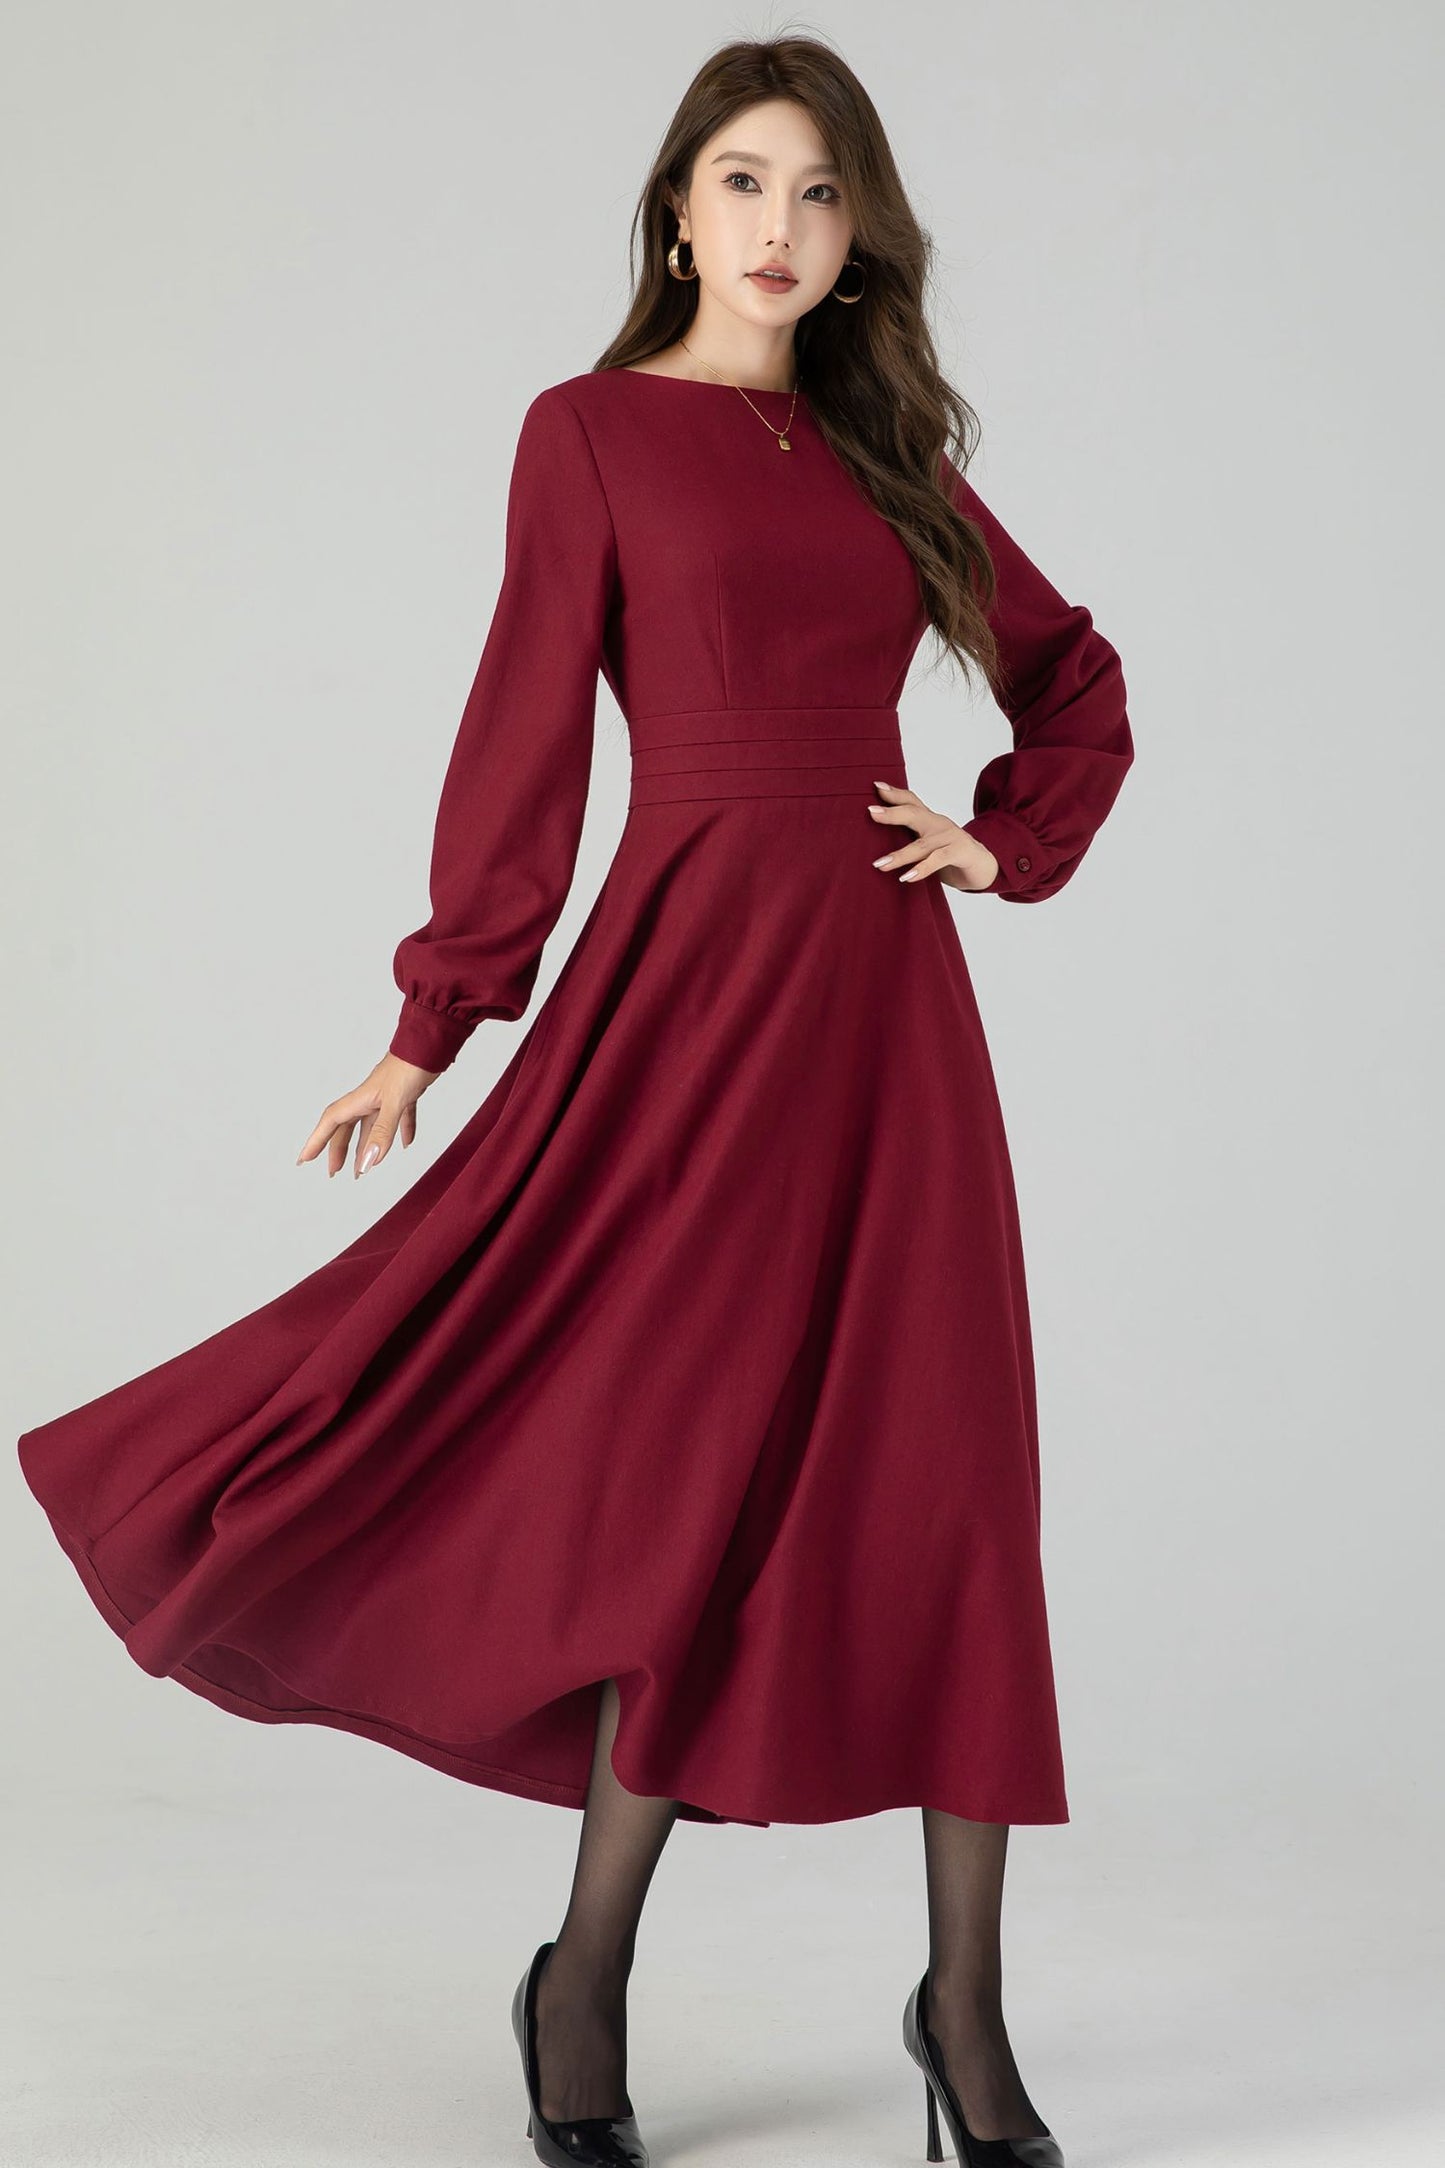 Burgundy swing winter wool dress for women 4550